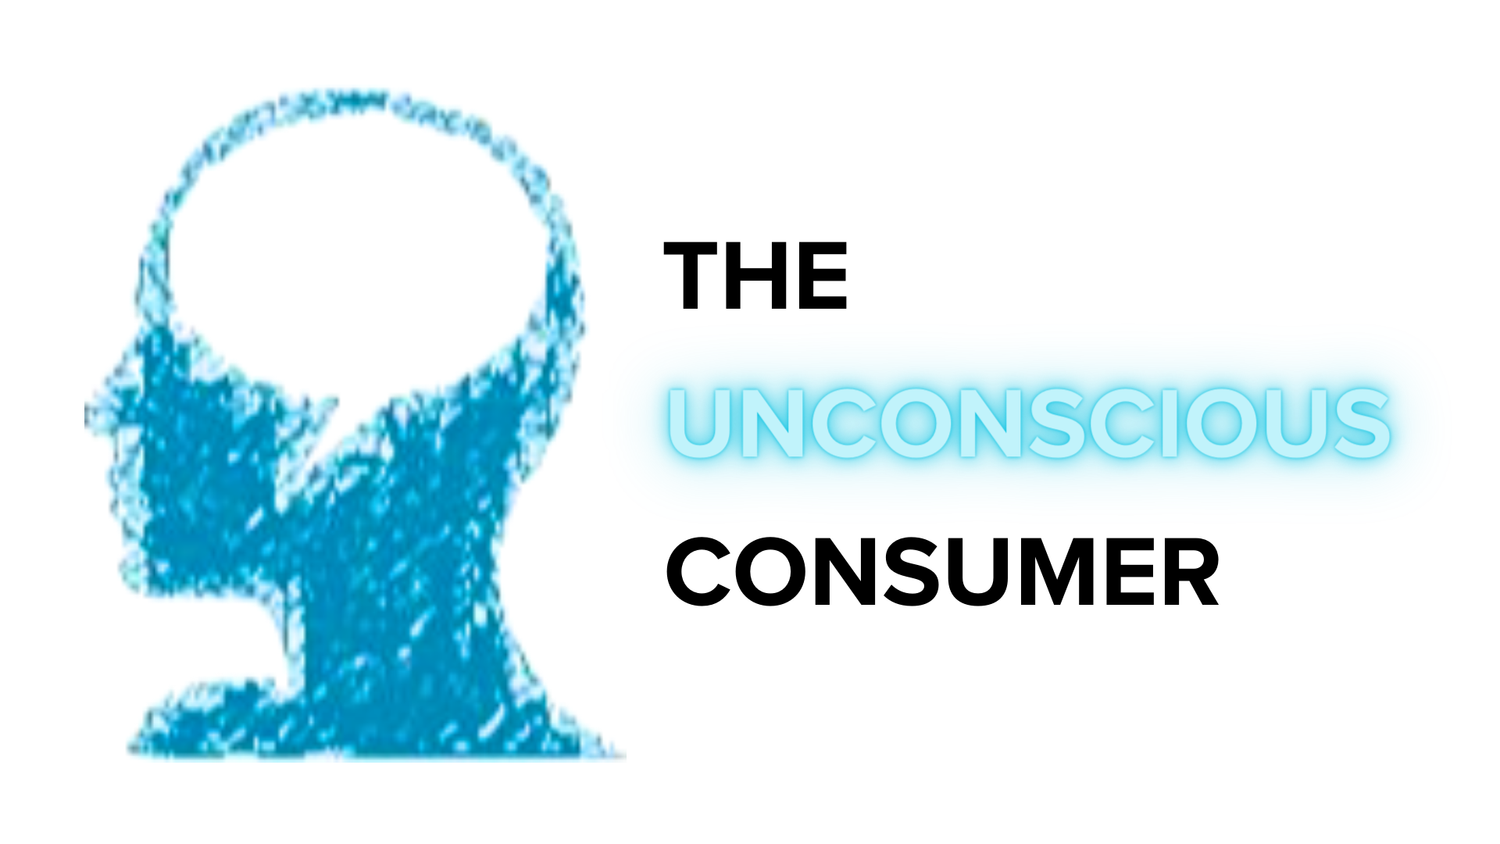 The Unconscious Consumer